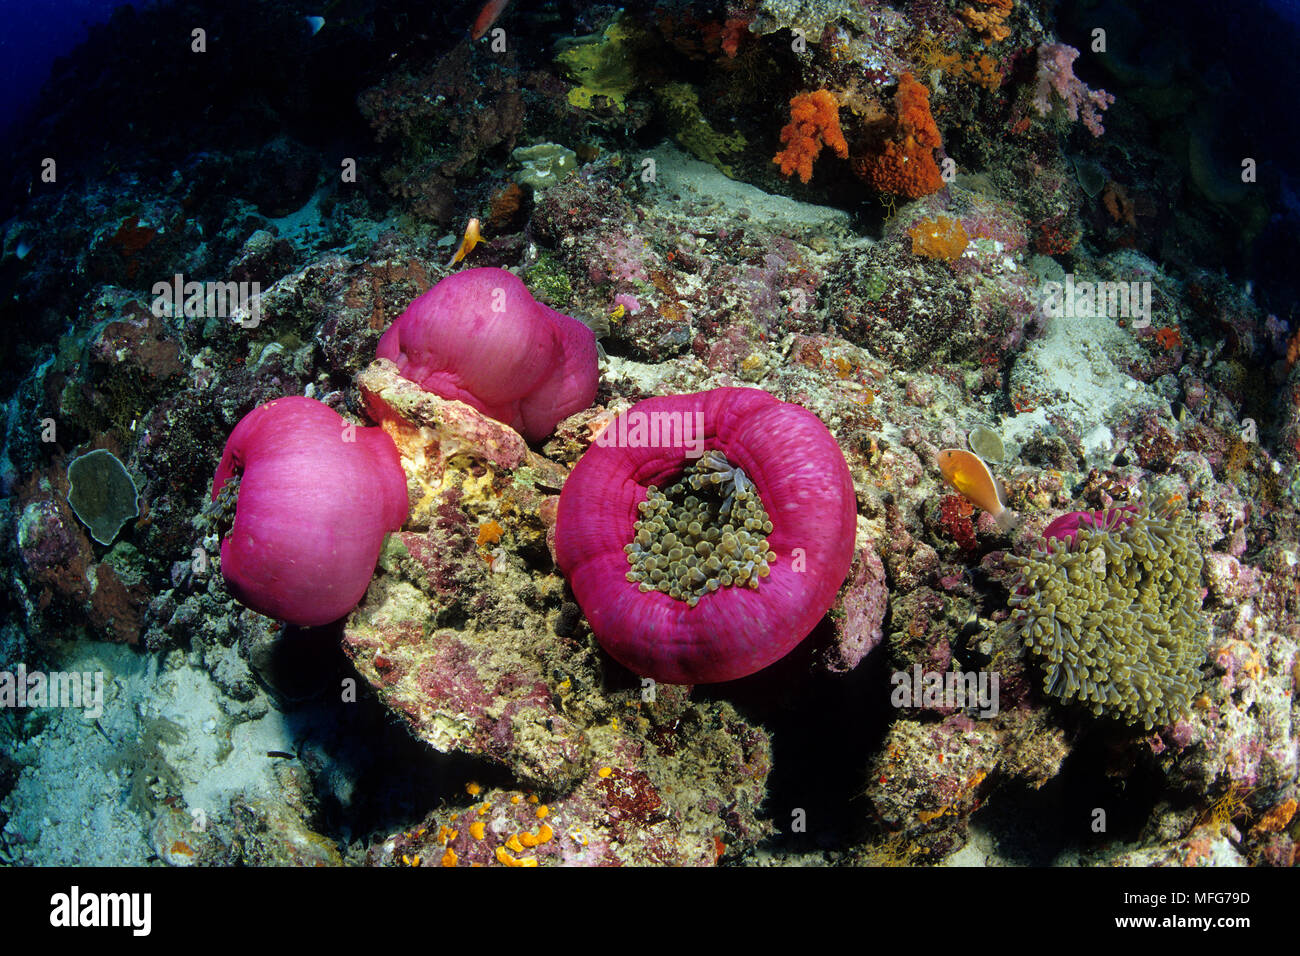 Magnifico mare anemone, Heteractis magnifica, Aldabra Atoll, patrimonio mondiale naturale, Seychelles, Oceano Indiano Data: 24.06.08 RIF: ZB777 115630 Foto Stock